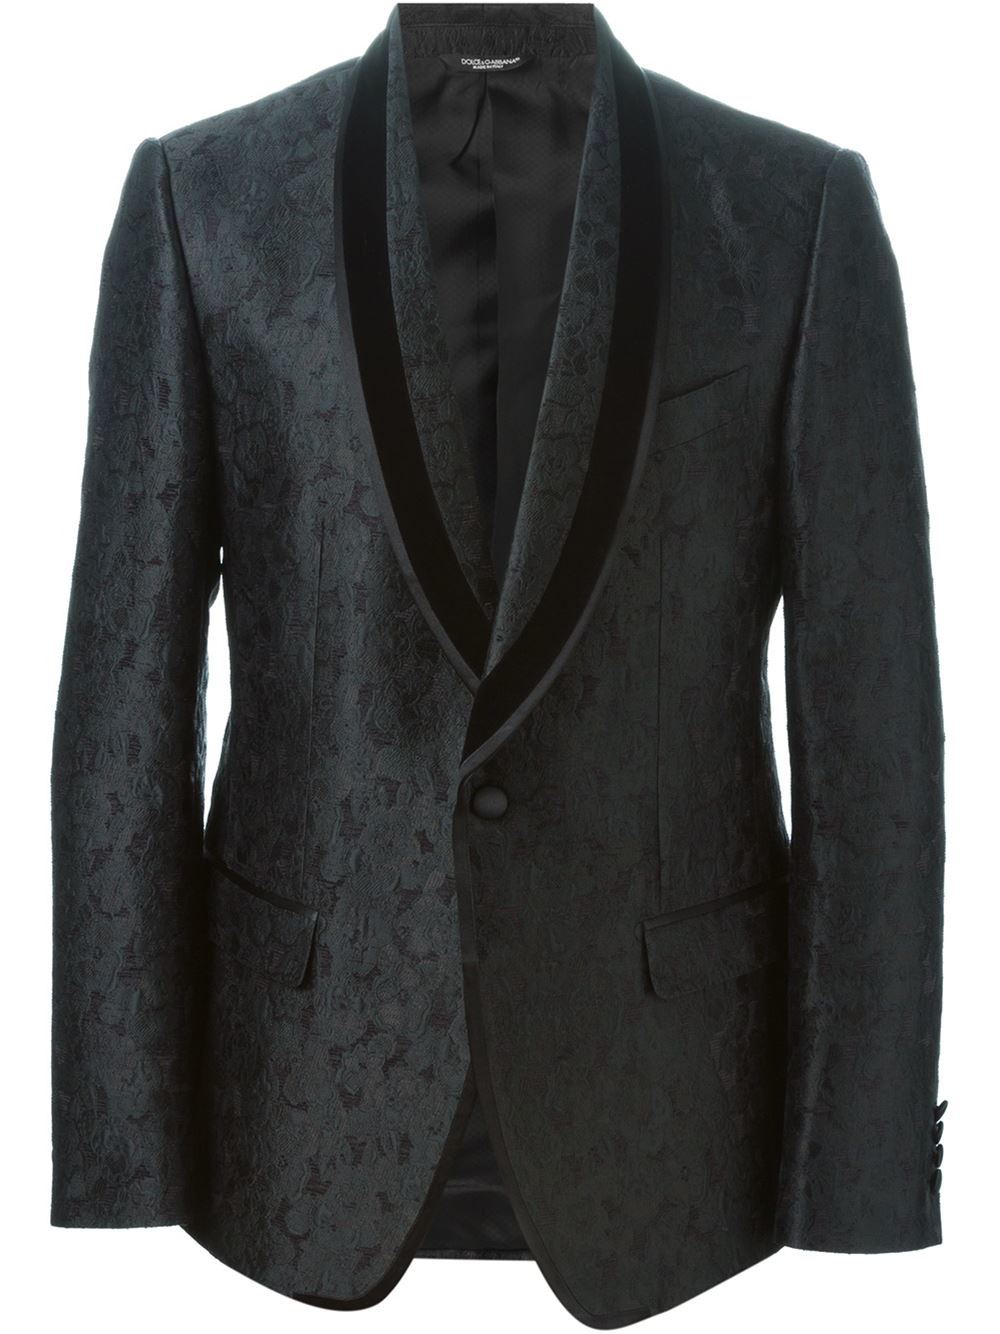 Lyst - Dolce & Gabbana Floral Jacquard Dinner Jacket in Black for Men